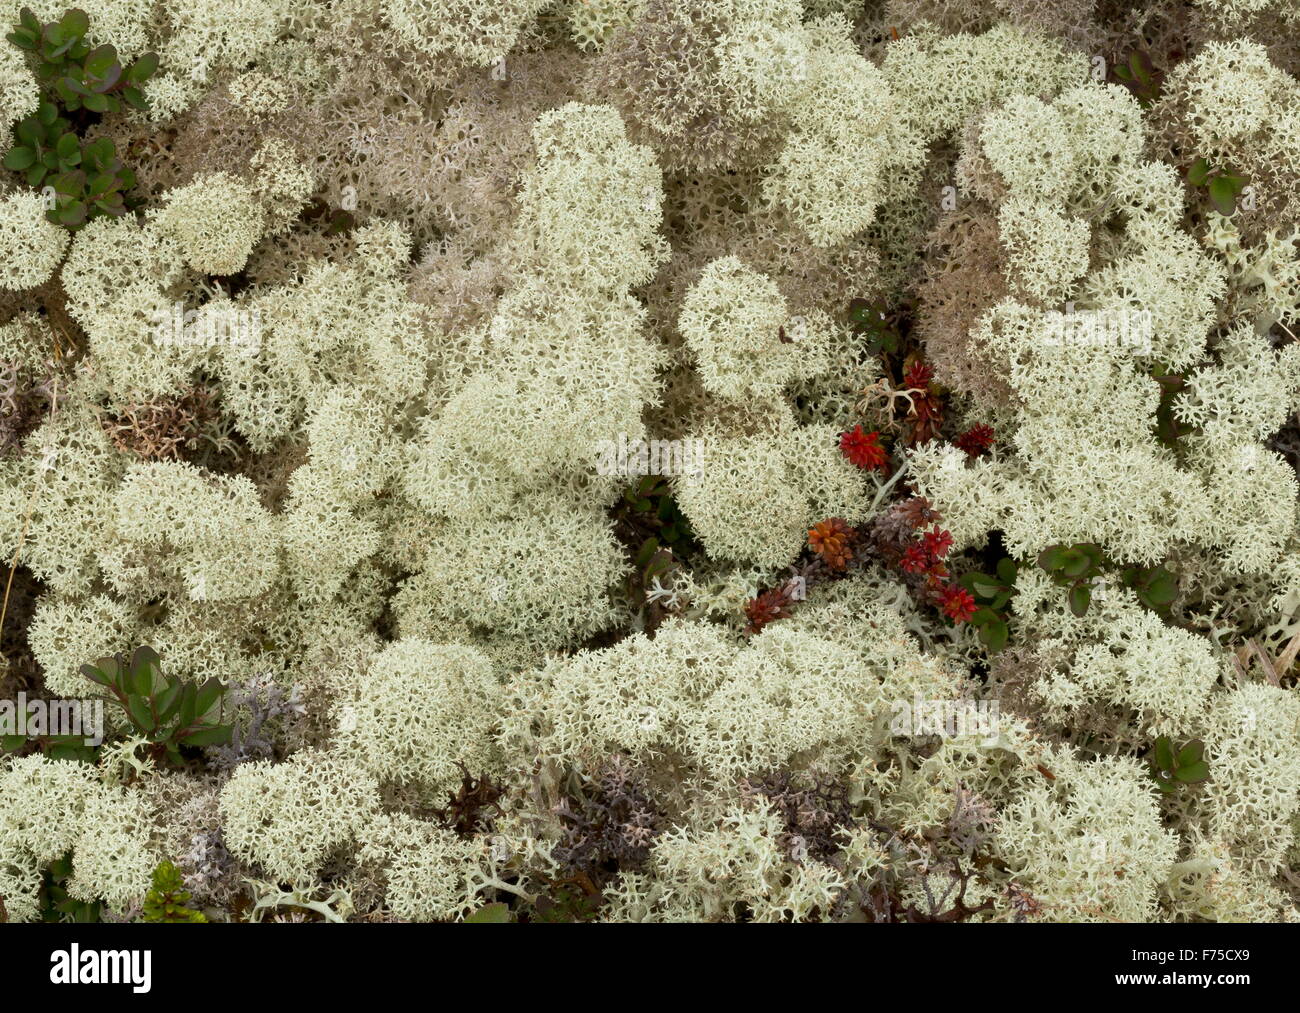 Boreali tundra dominato da un lichen, Cladonia stellaris, con crowberry ecc. A nord di Terranova. Foto Stock